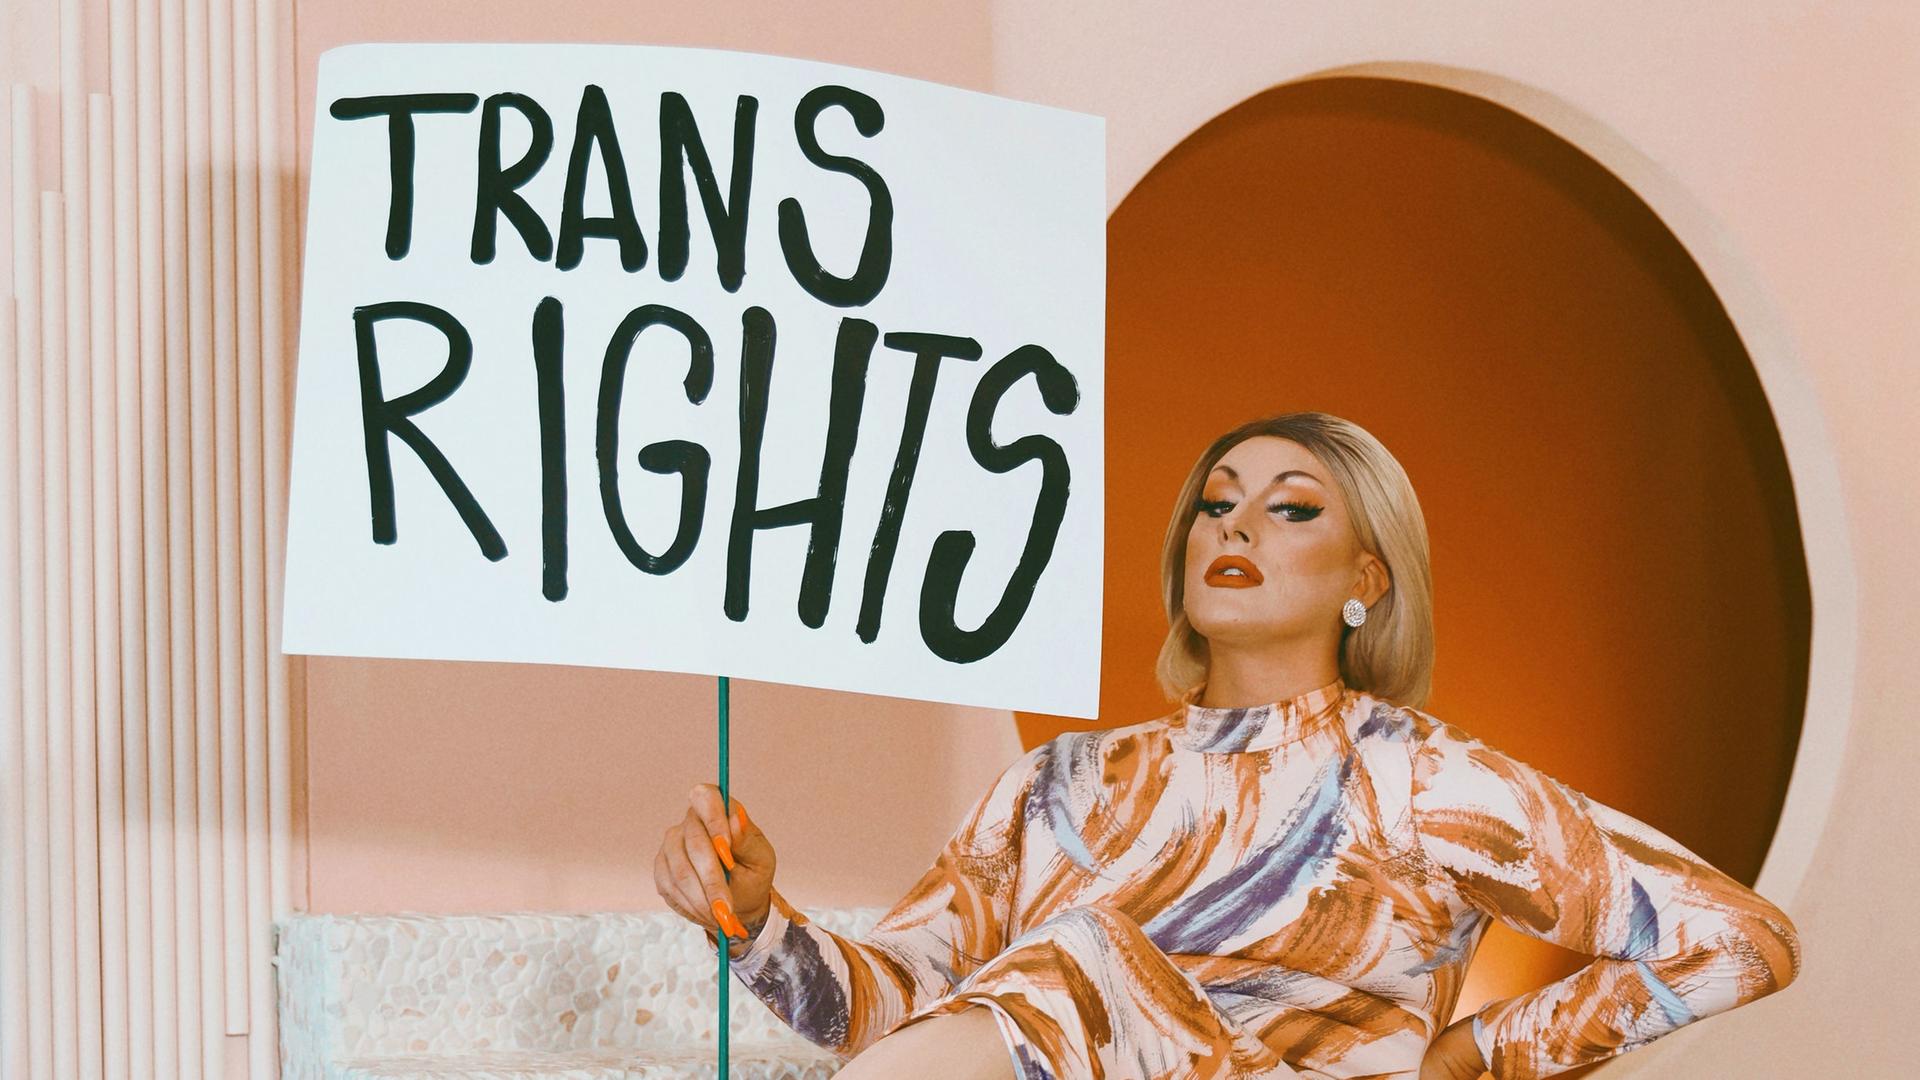 Die Dragqueen und Politikerin Maebe A. Girl mit einem Schild auf dem "Trans Rights" steht vor einer orangefarbenen Kulisse.